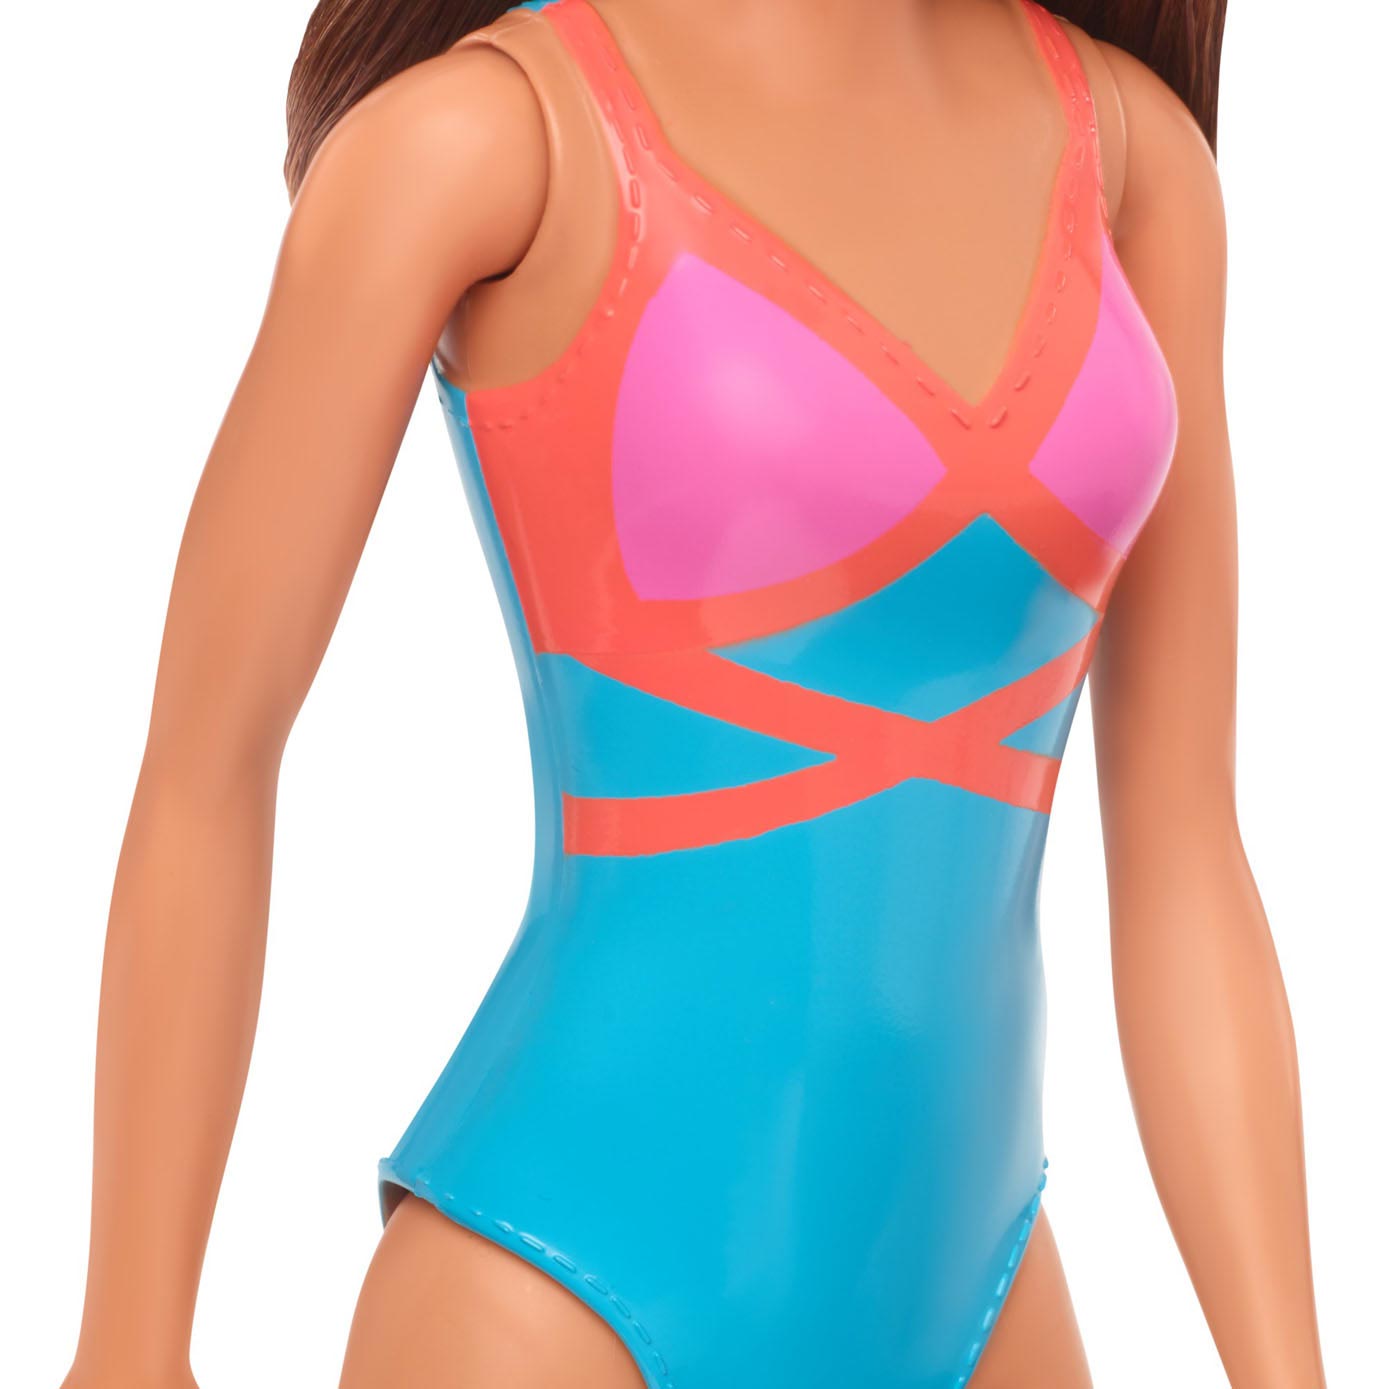 Barbie-Puppe Strandpuppe – Braunes Haar mit Badeanzug